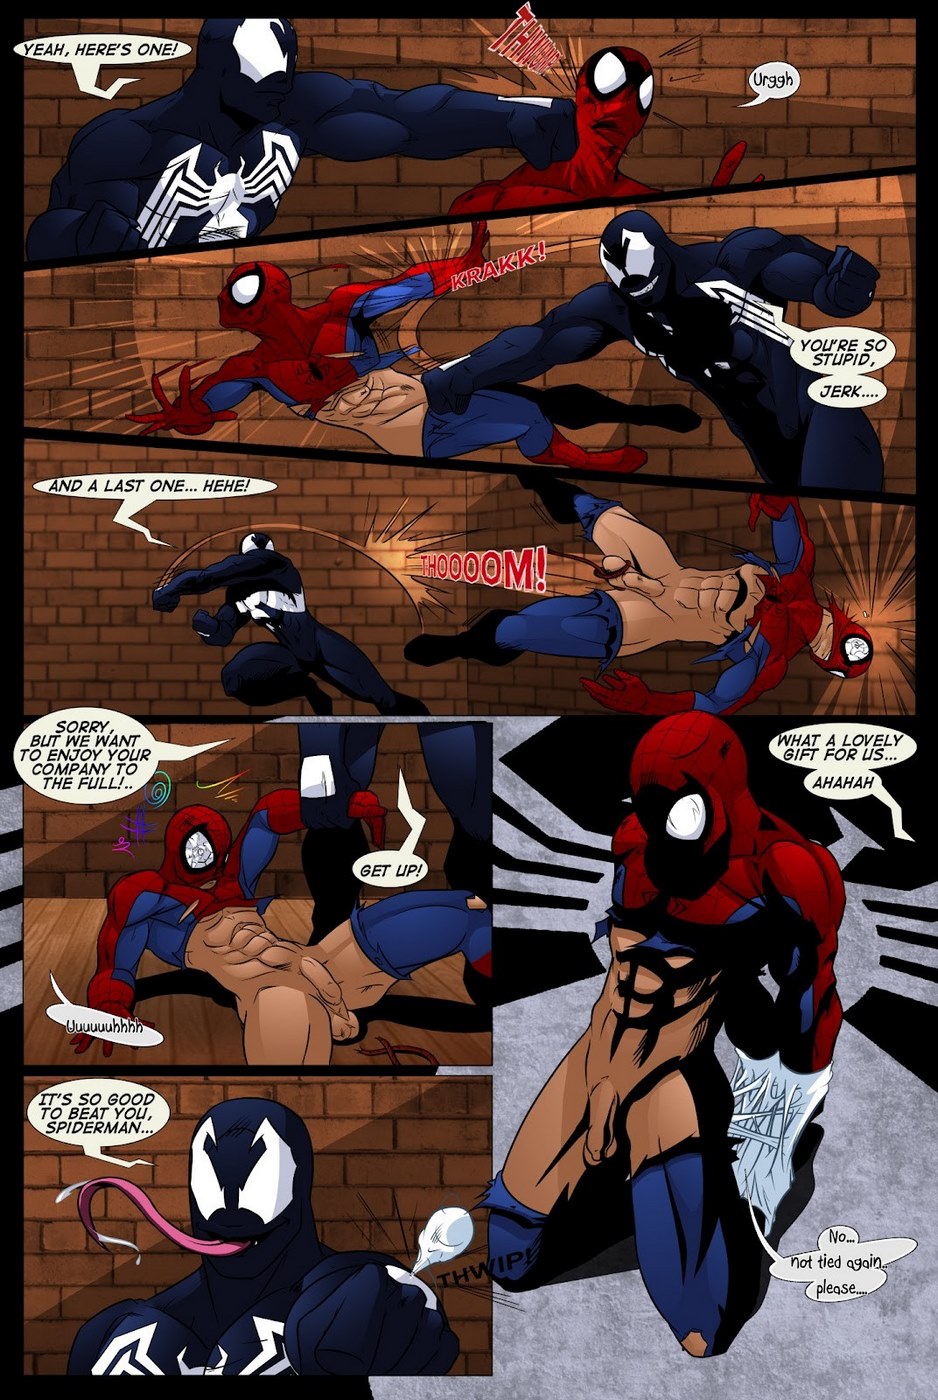 938px x 1400px - Shooters (Spider-Man Venom) - Porn Cartoon Comics